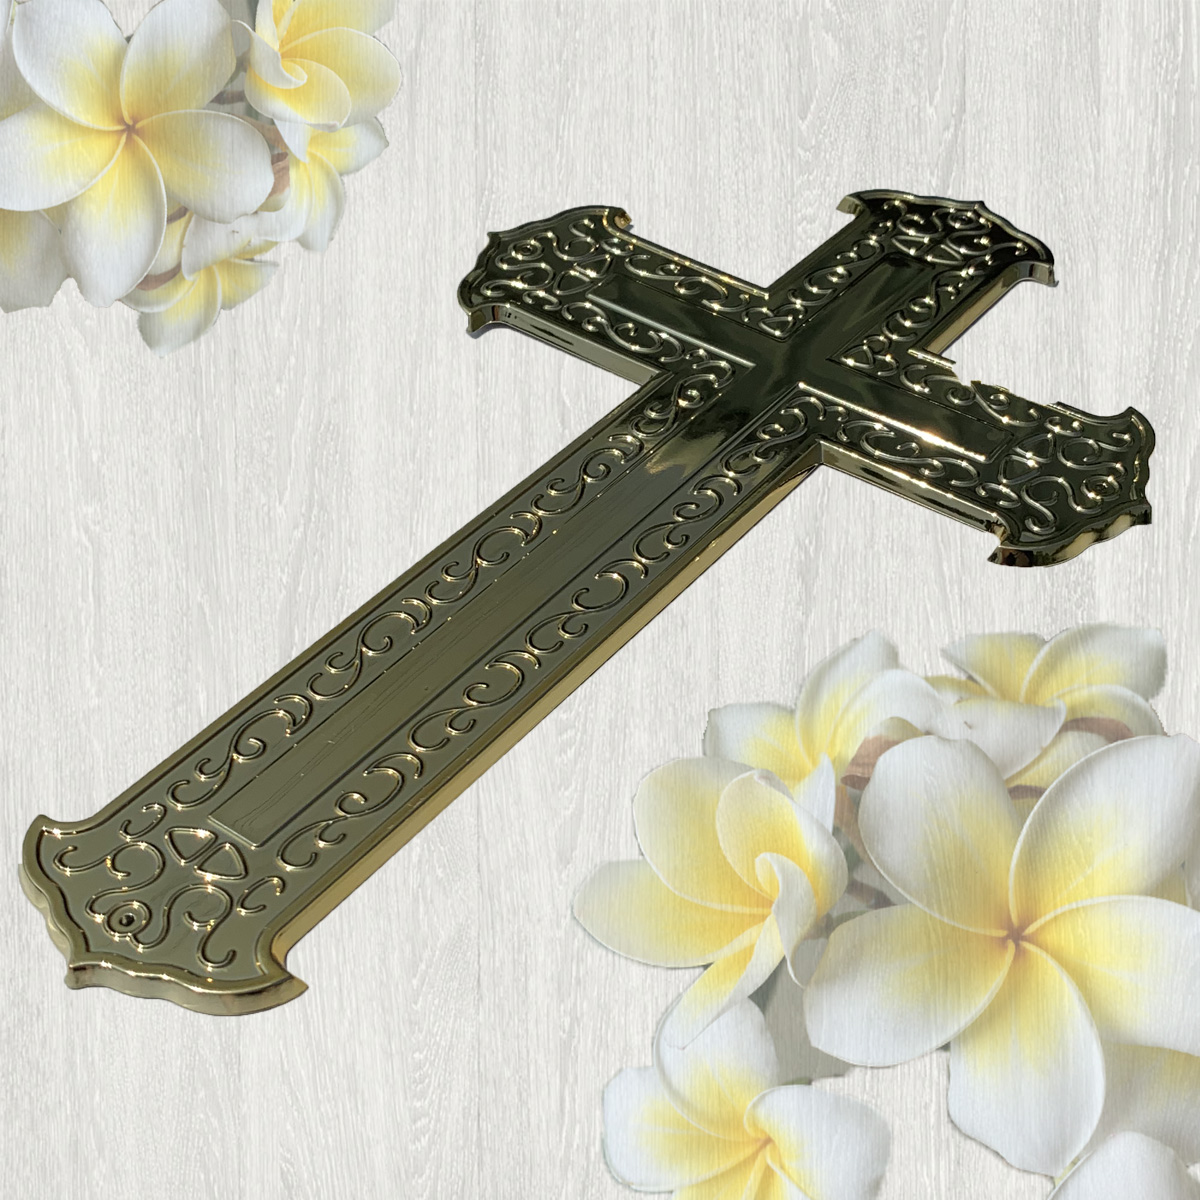 【入殮出】十字架基督天主火化平蓋原木色扶手棺2尺